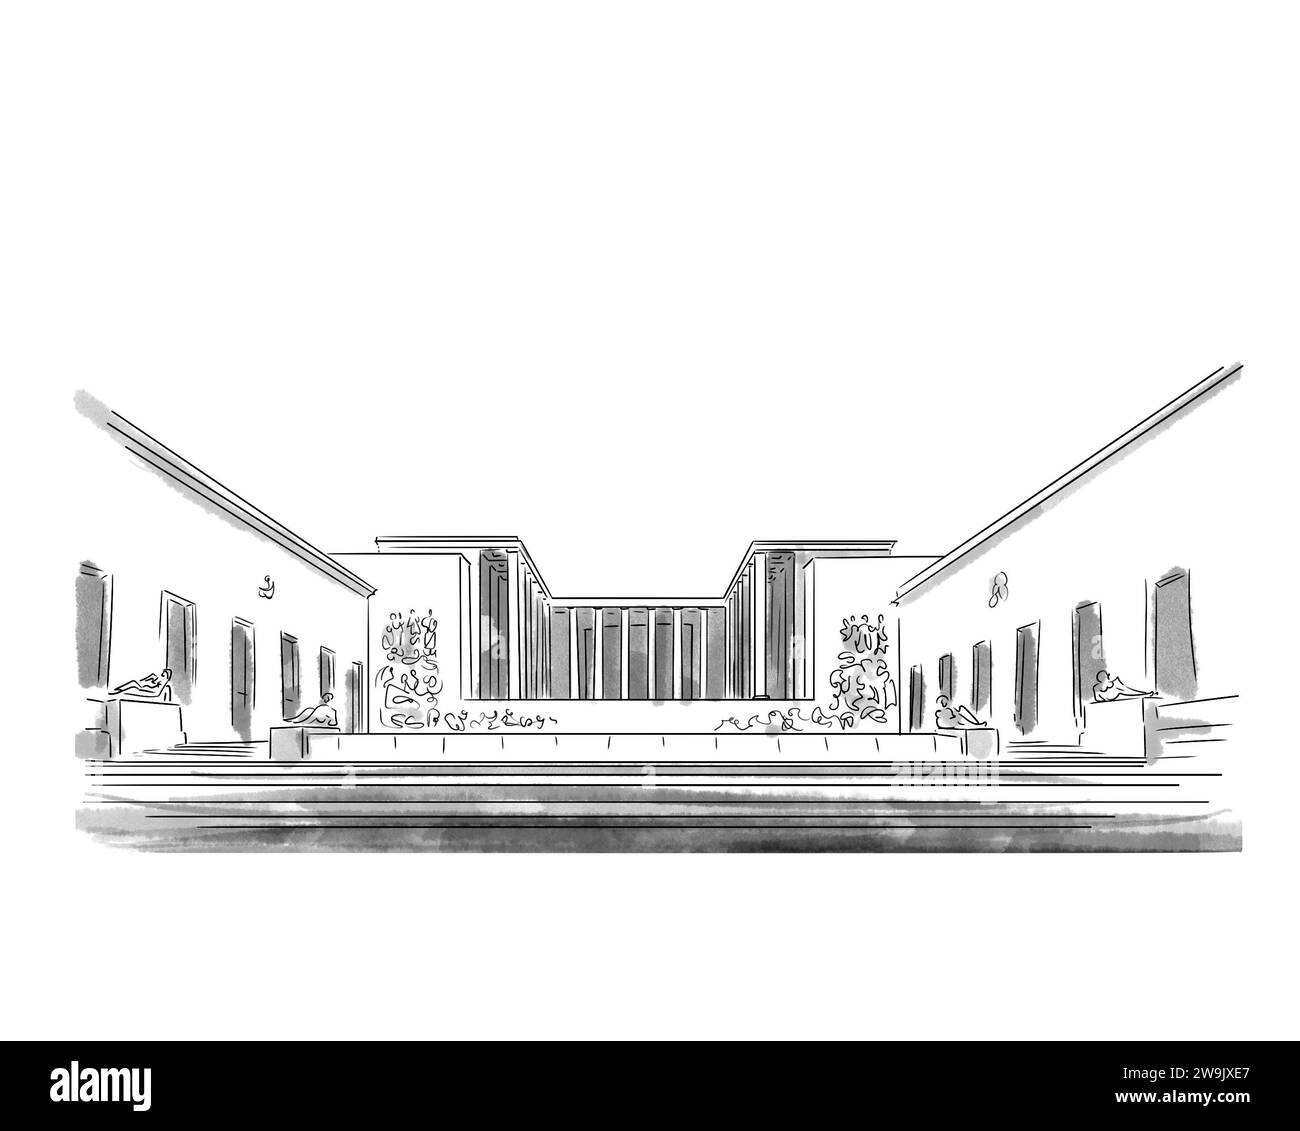 Illustration en noir et blanc de monument de Paris, Palais de Tokyo Stock Photo